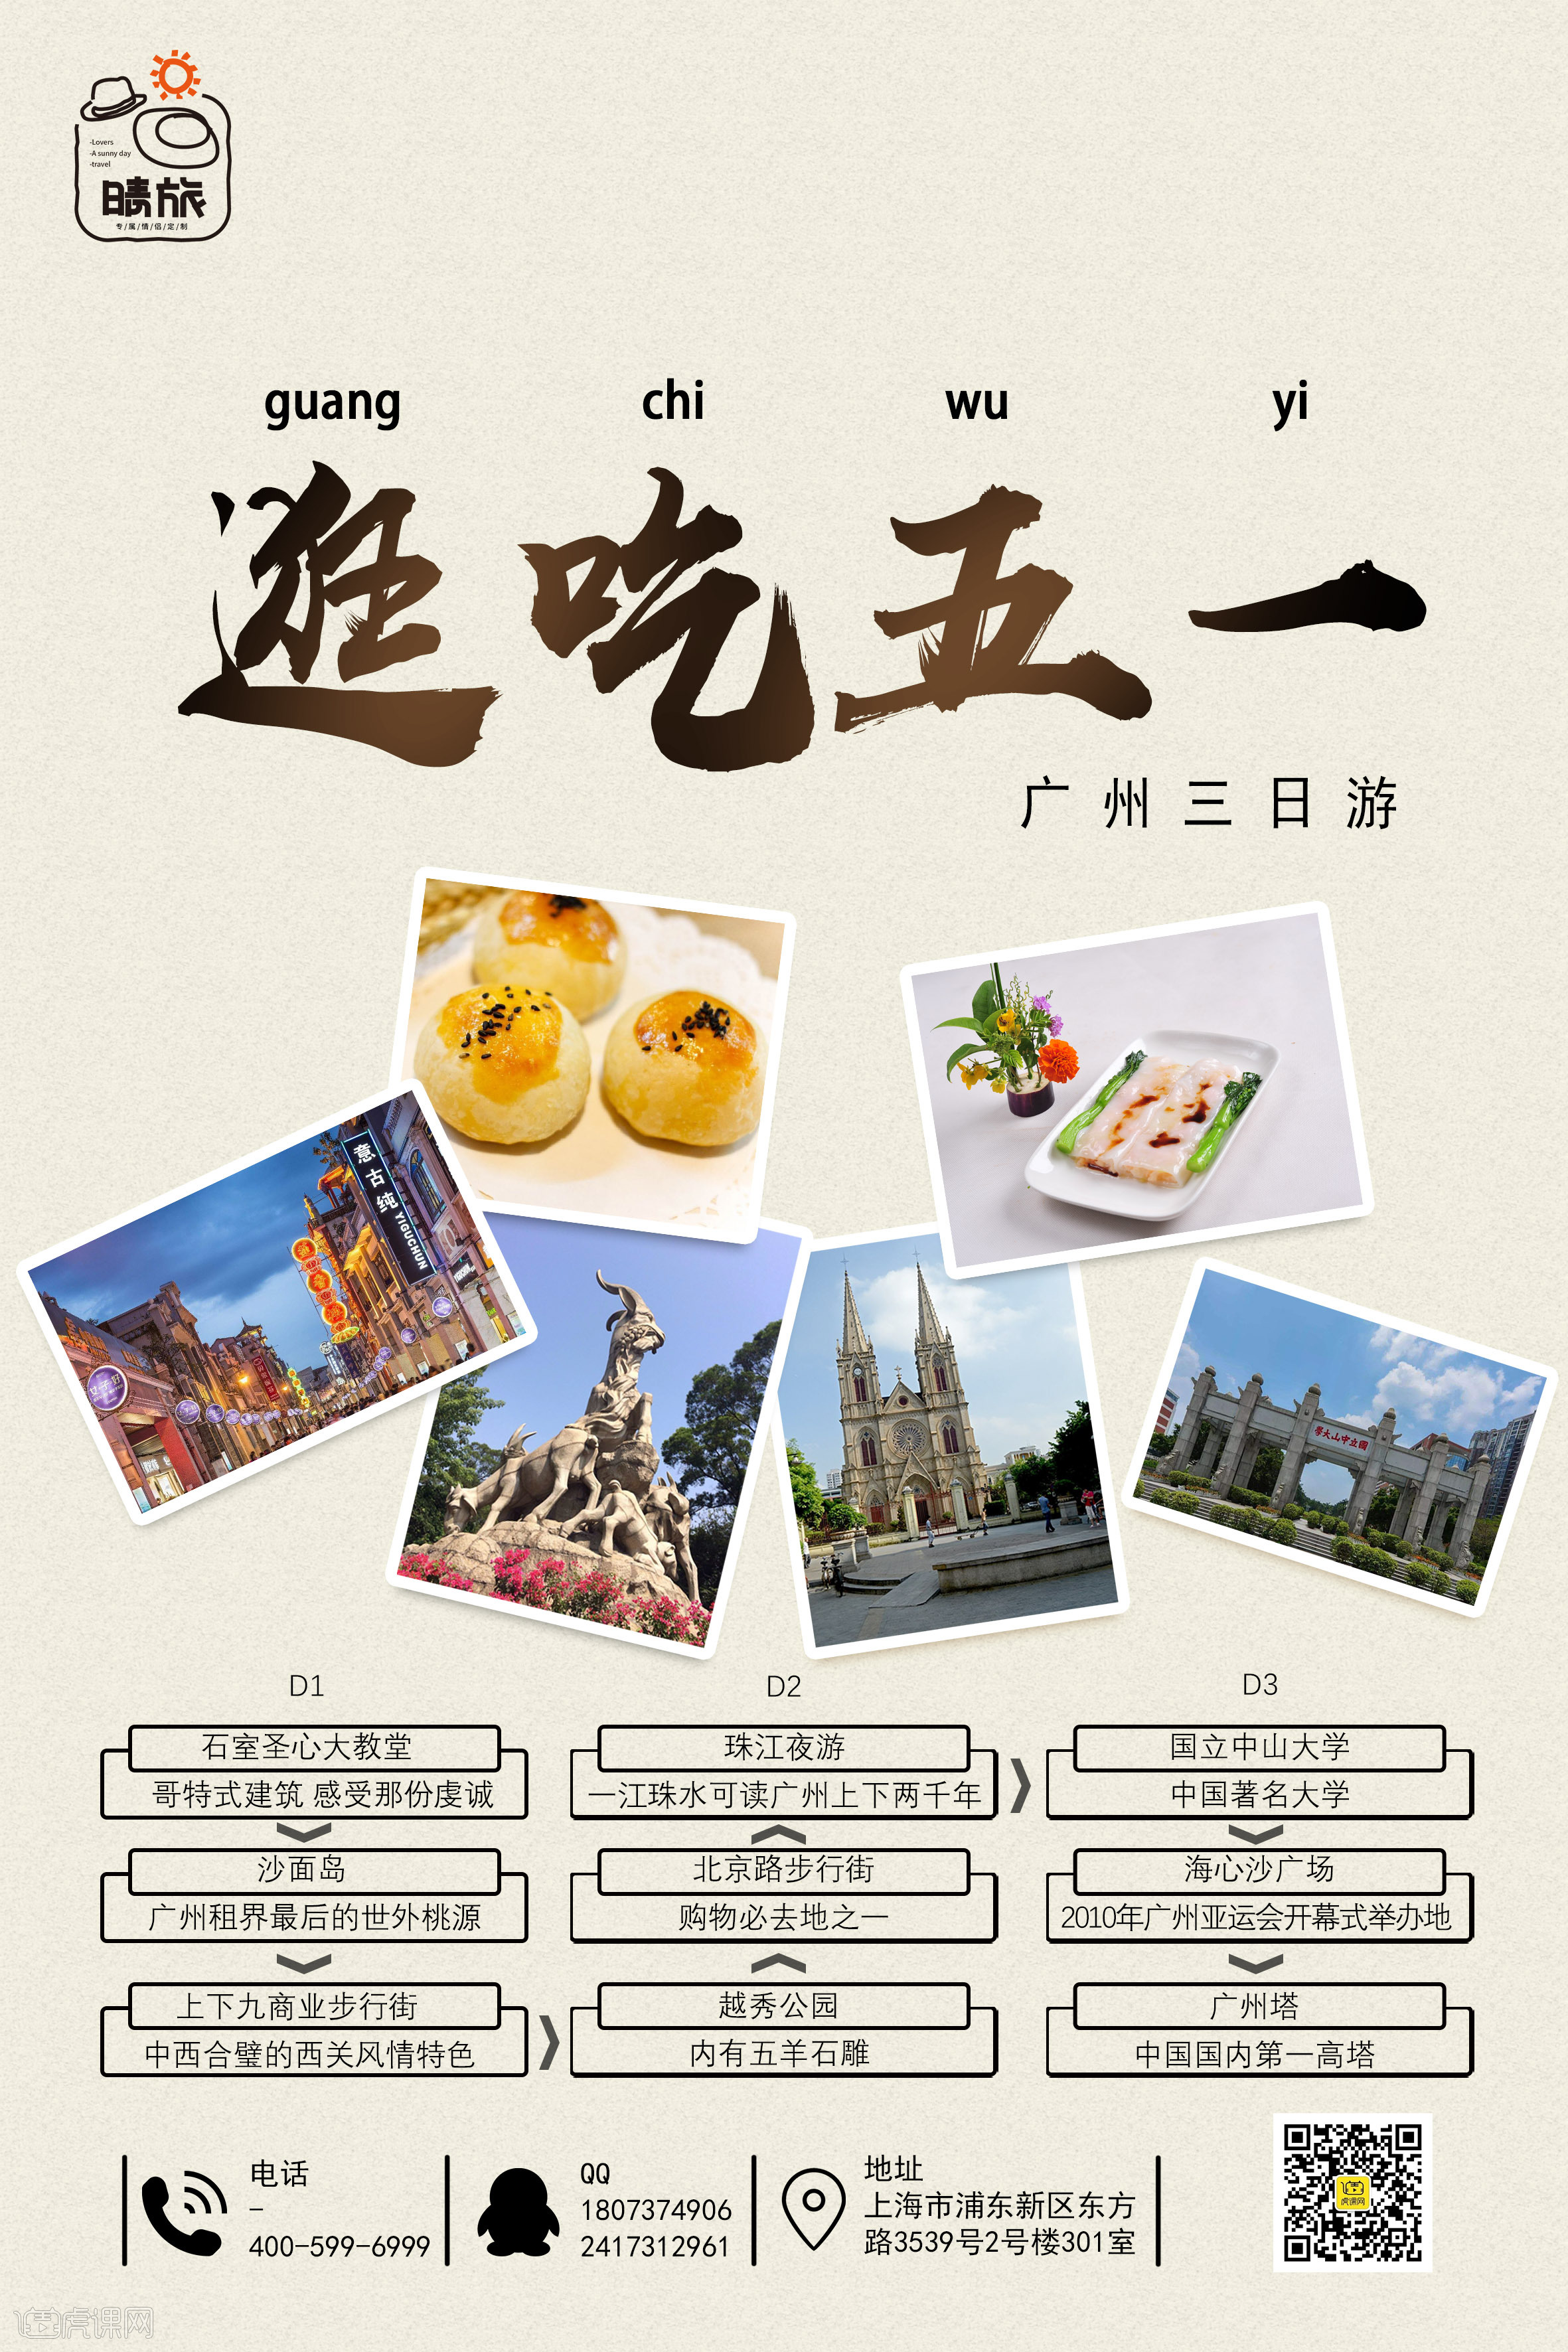 逛吃五一 广州旅游海报第二版